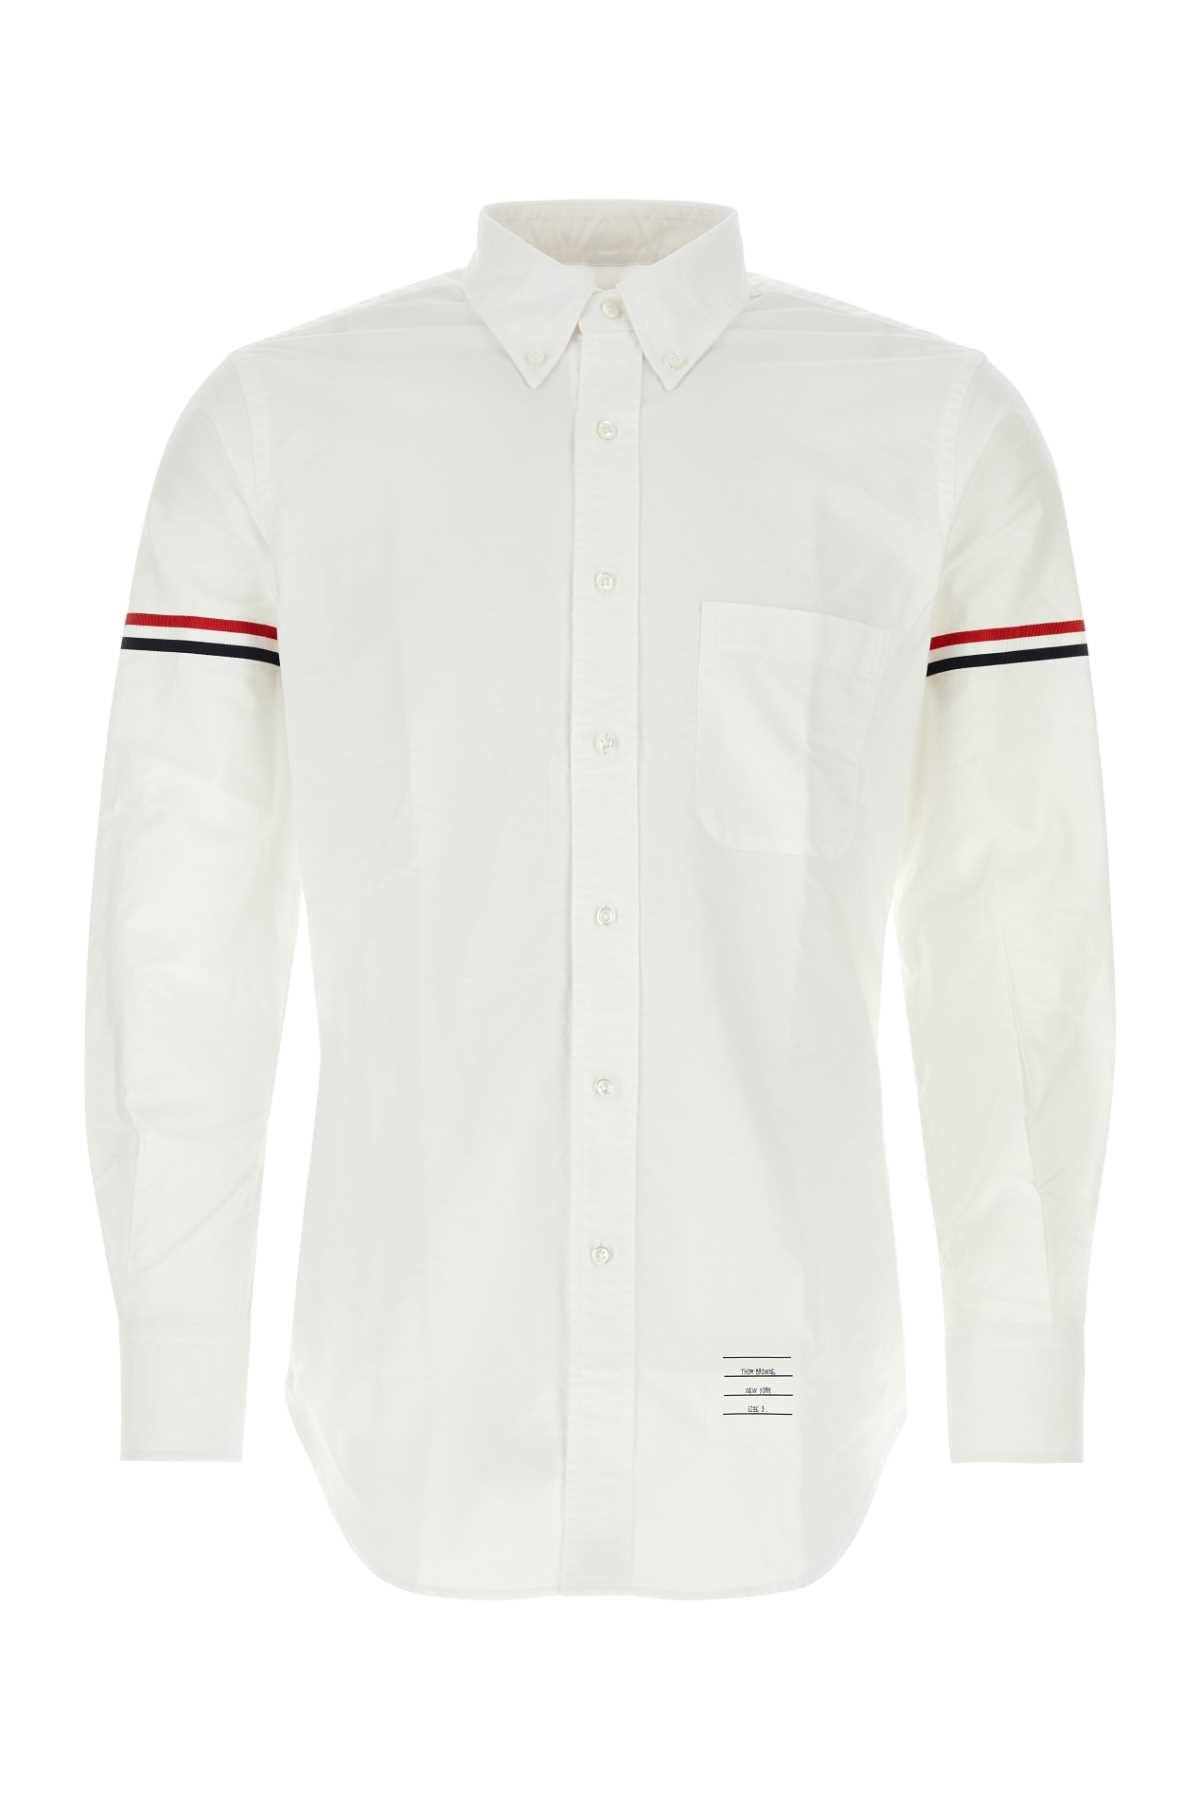 Shop Thom Browne White Piquet Shirt